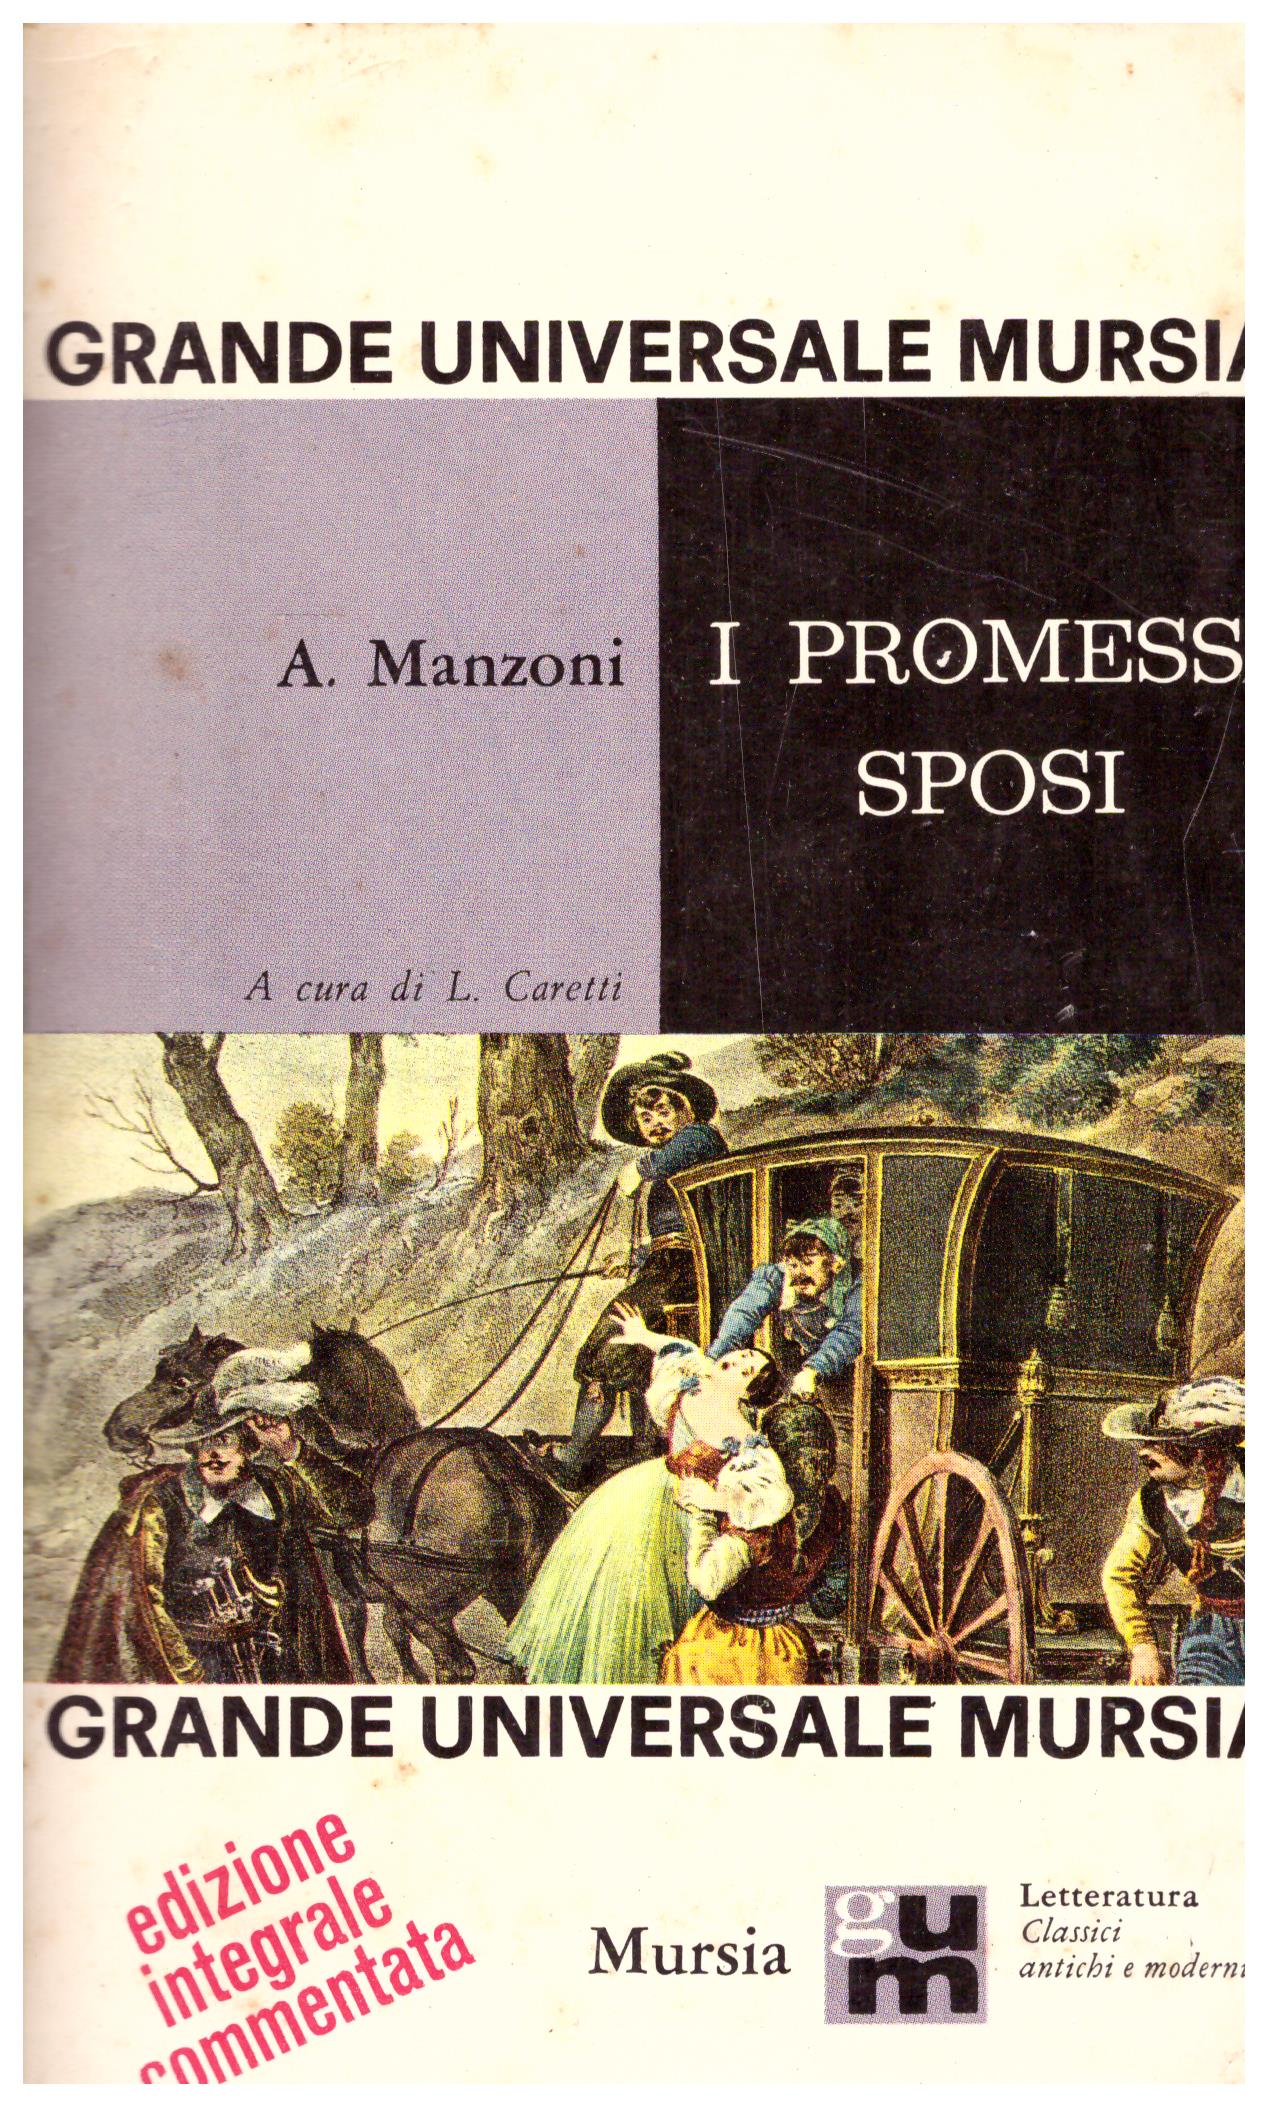 Titolo: I promessi sposi Autore: Alessandro Manzoni.  Editore: Mursia, 1966